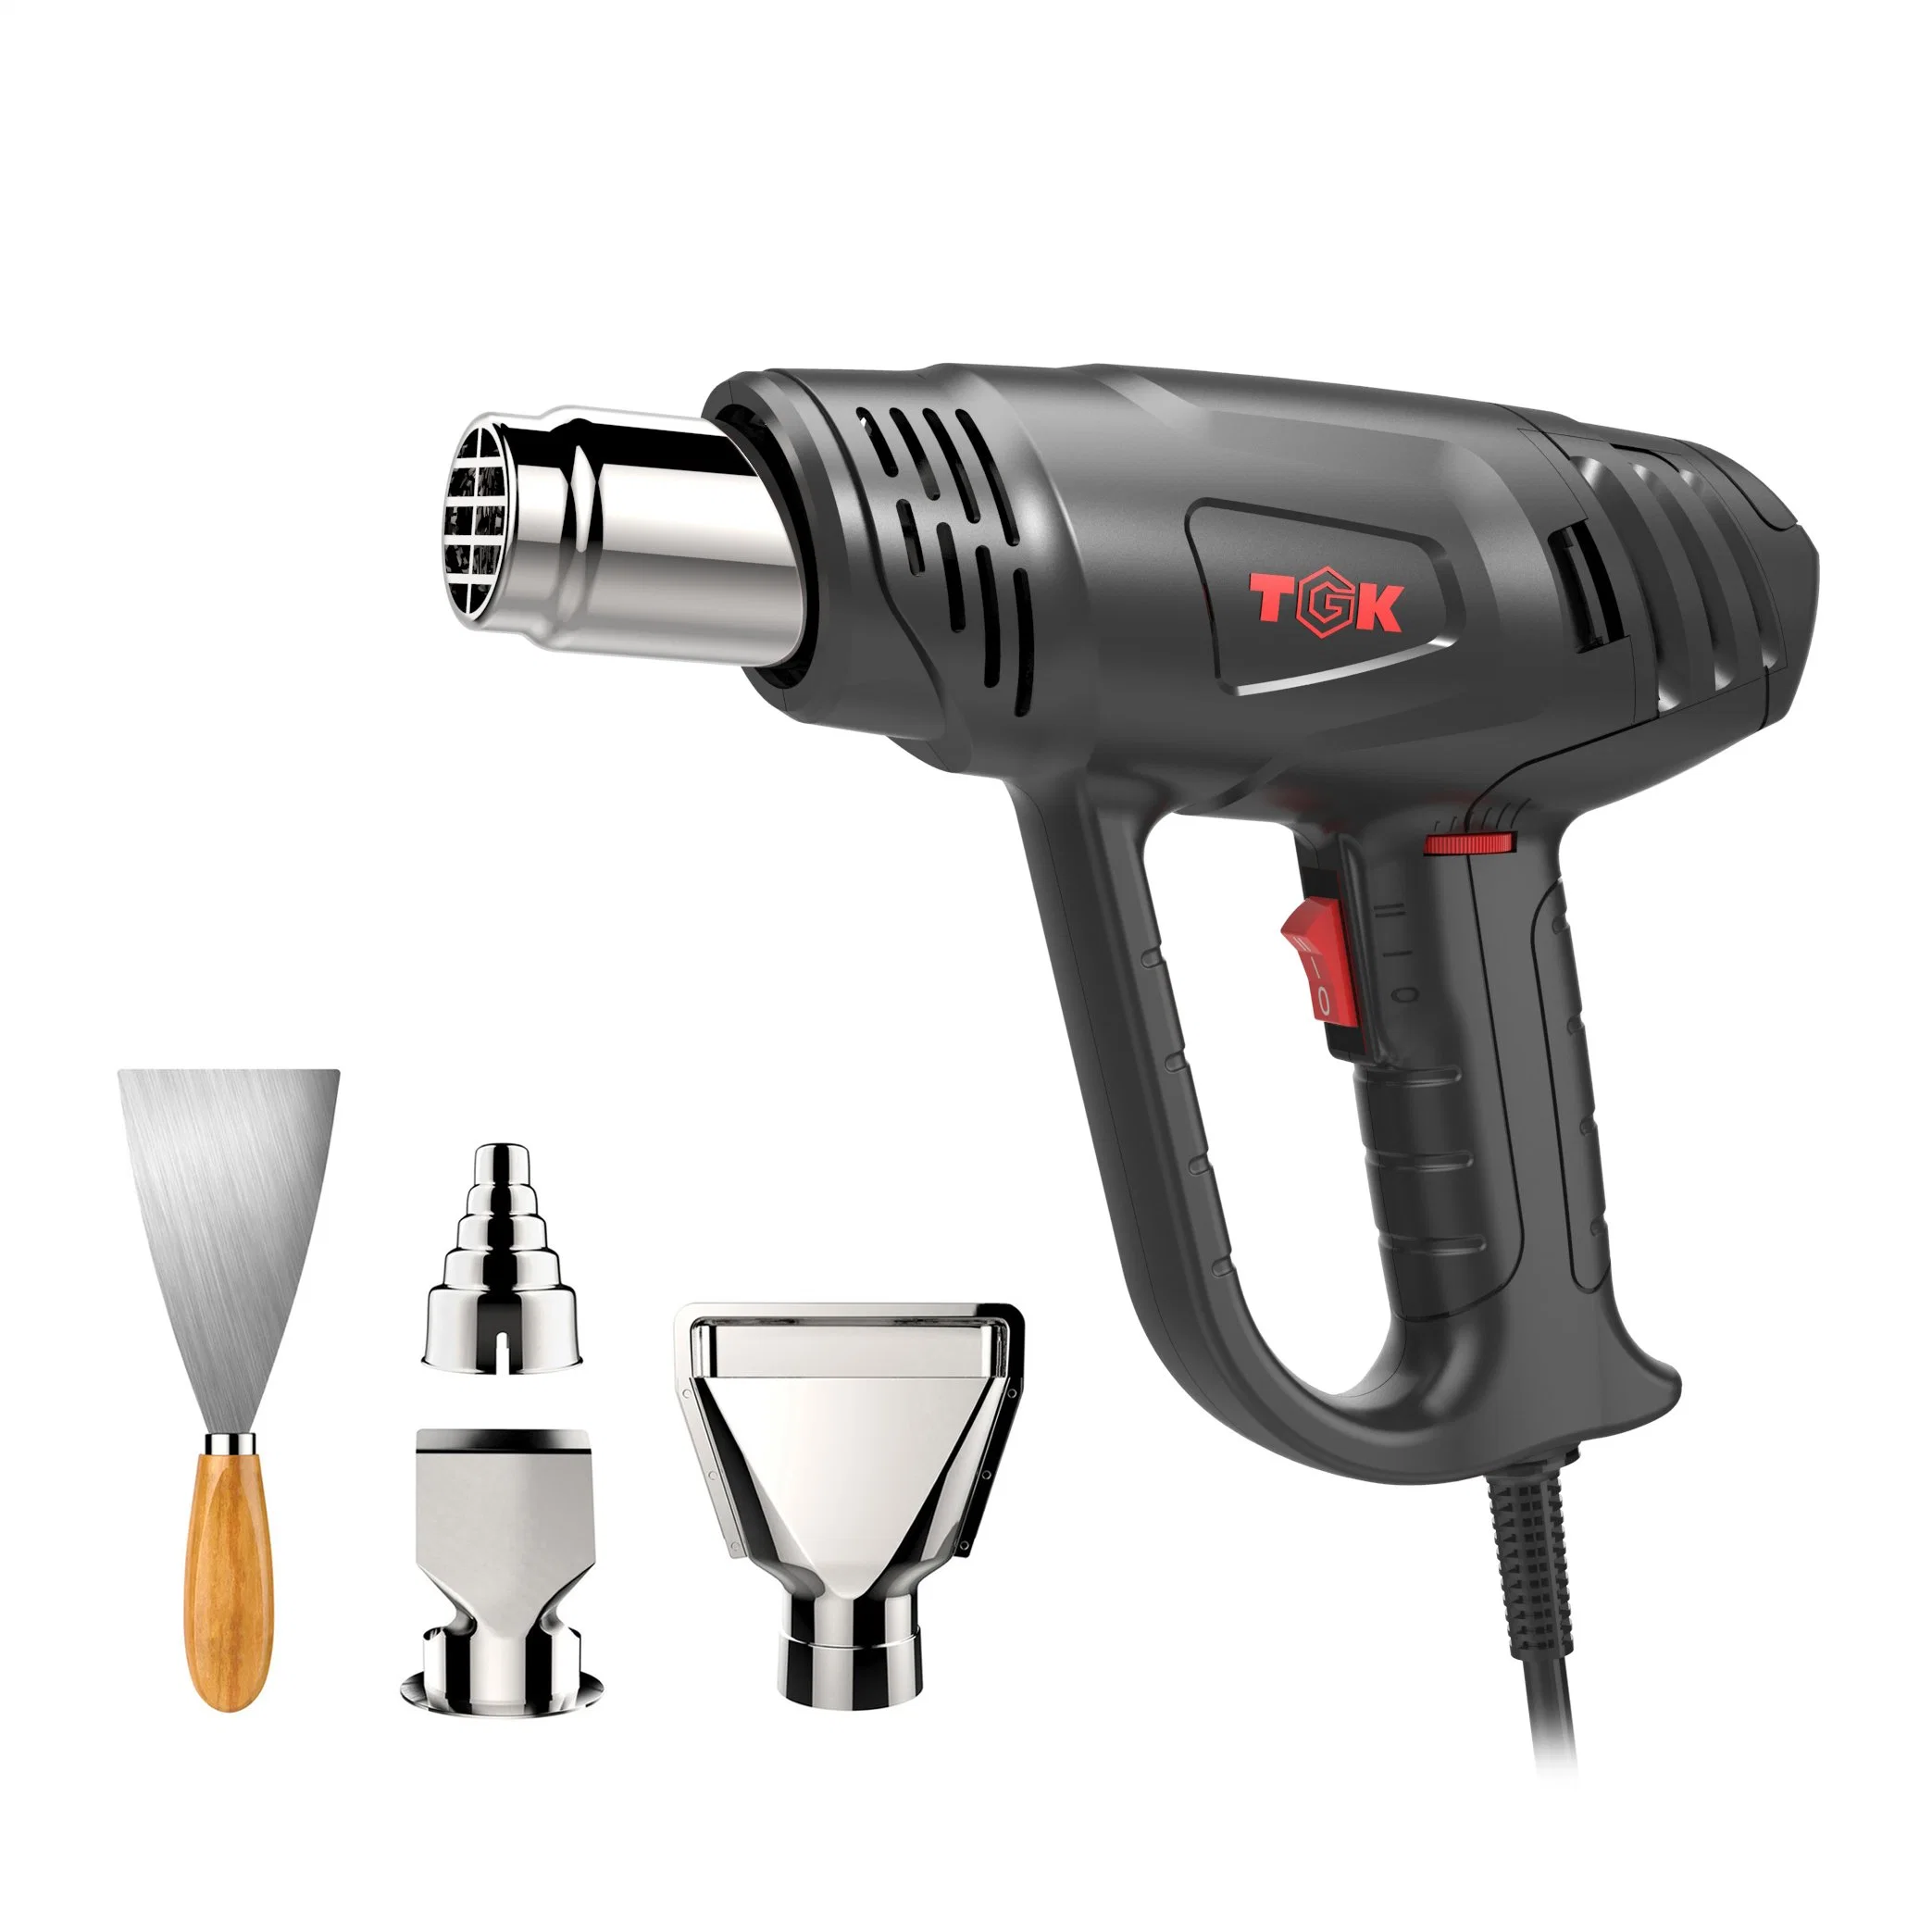 Power Tool Hot Air Gun to Help Dry Paint or Caulk Hg5520